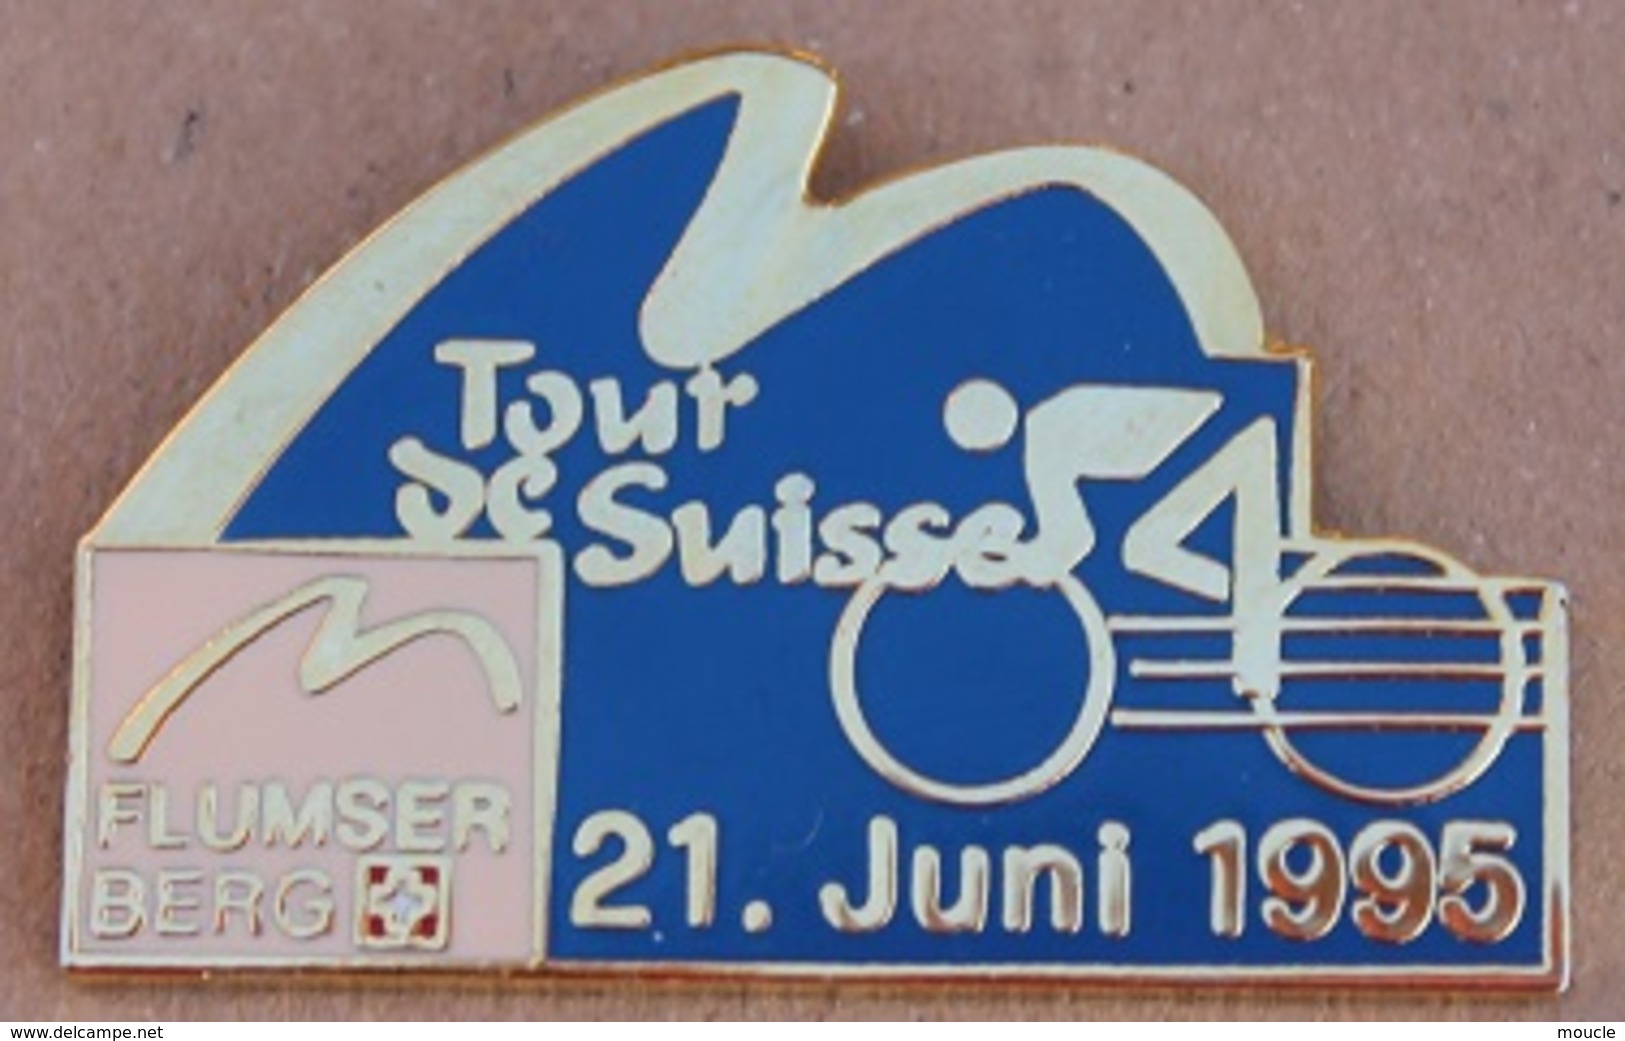 CYCLISME - VELO - CYCLISTE - TOUR DE SUISSE 21 JUNI 1995 - FLUMSER BERG  -      (16) - Cyclisme